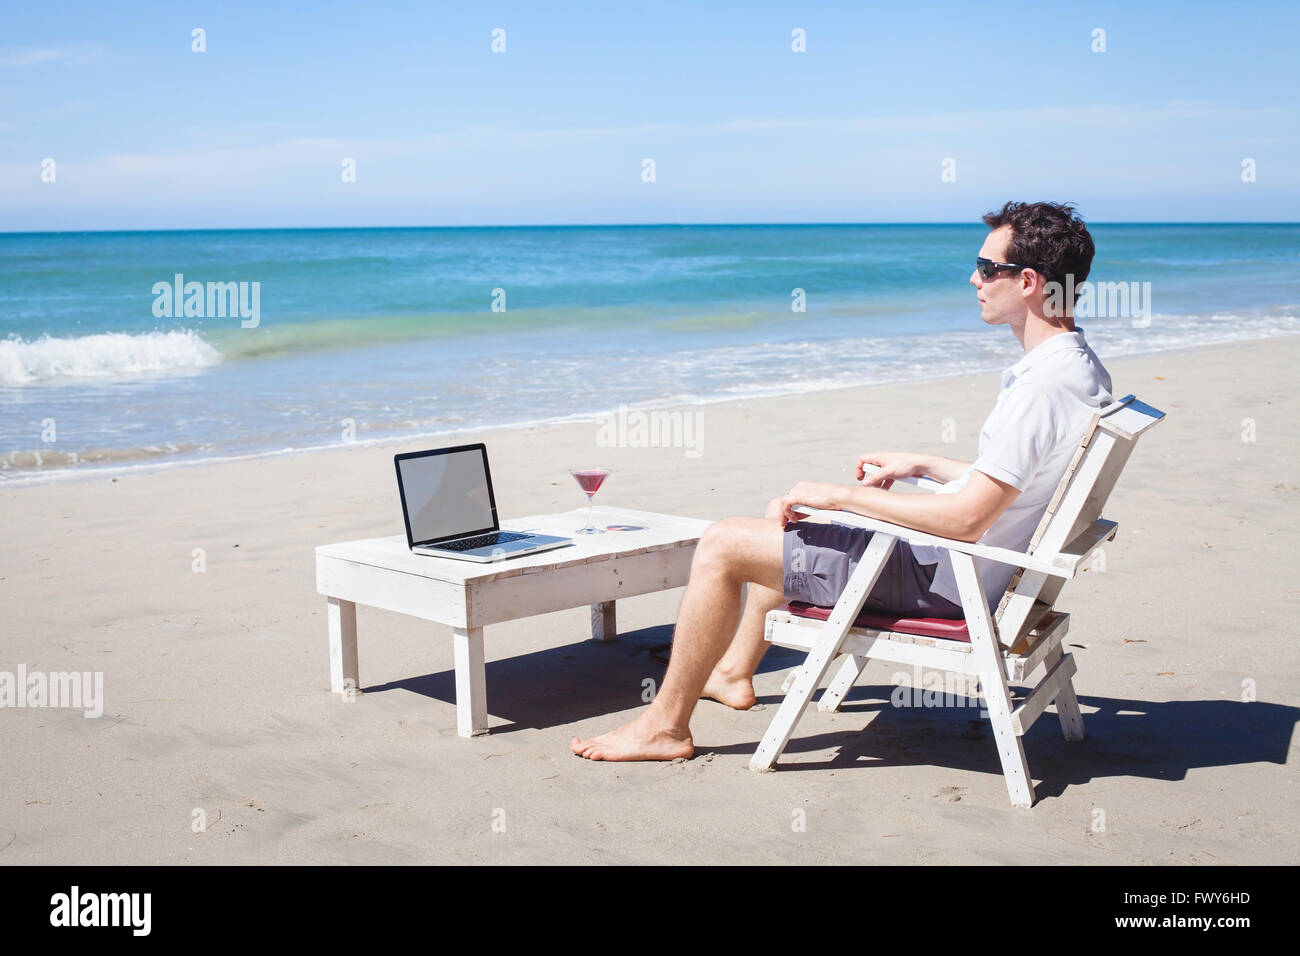 El teletrabajo, empresario de relax en la playa con un portátil y cócteles, freelancer trabajo, trabajo de sueño Foto de stock